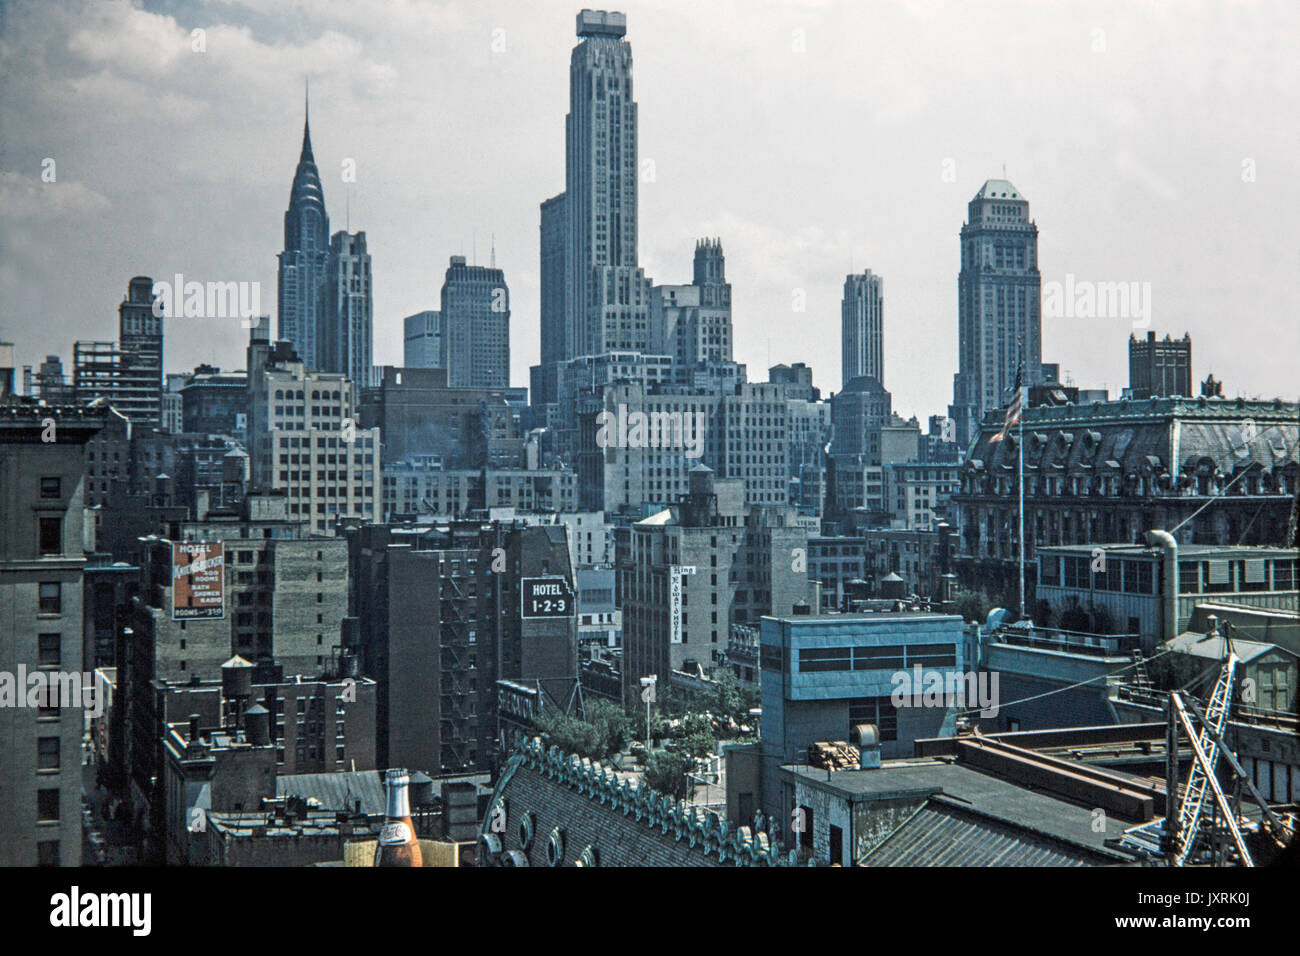 Blick auf Gebäude in New York City in 1956. Zeichen können für Hotel Knickerbocker, King Edward Hotel, 1-2-3 Hotel gesehen werden, und dem Sheraton Hotel. Blick auf die Skyline zeigt viele Gebäude in diesem Teil von Manhattan zu der Zeit. Stockfoto